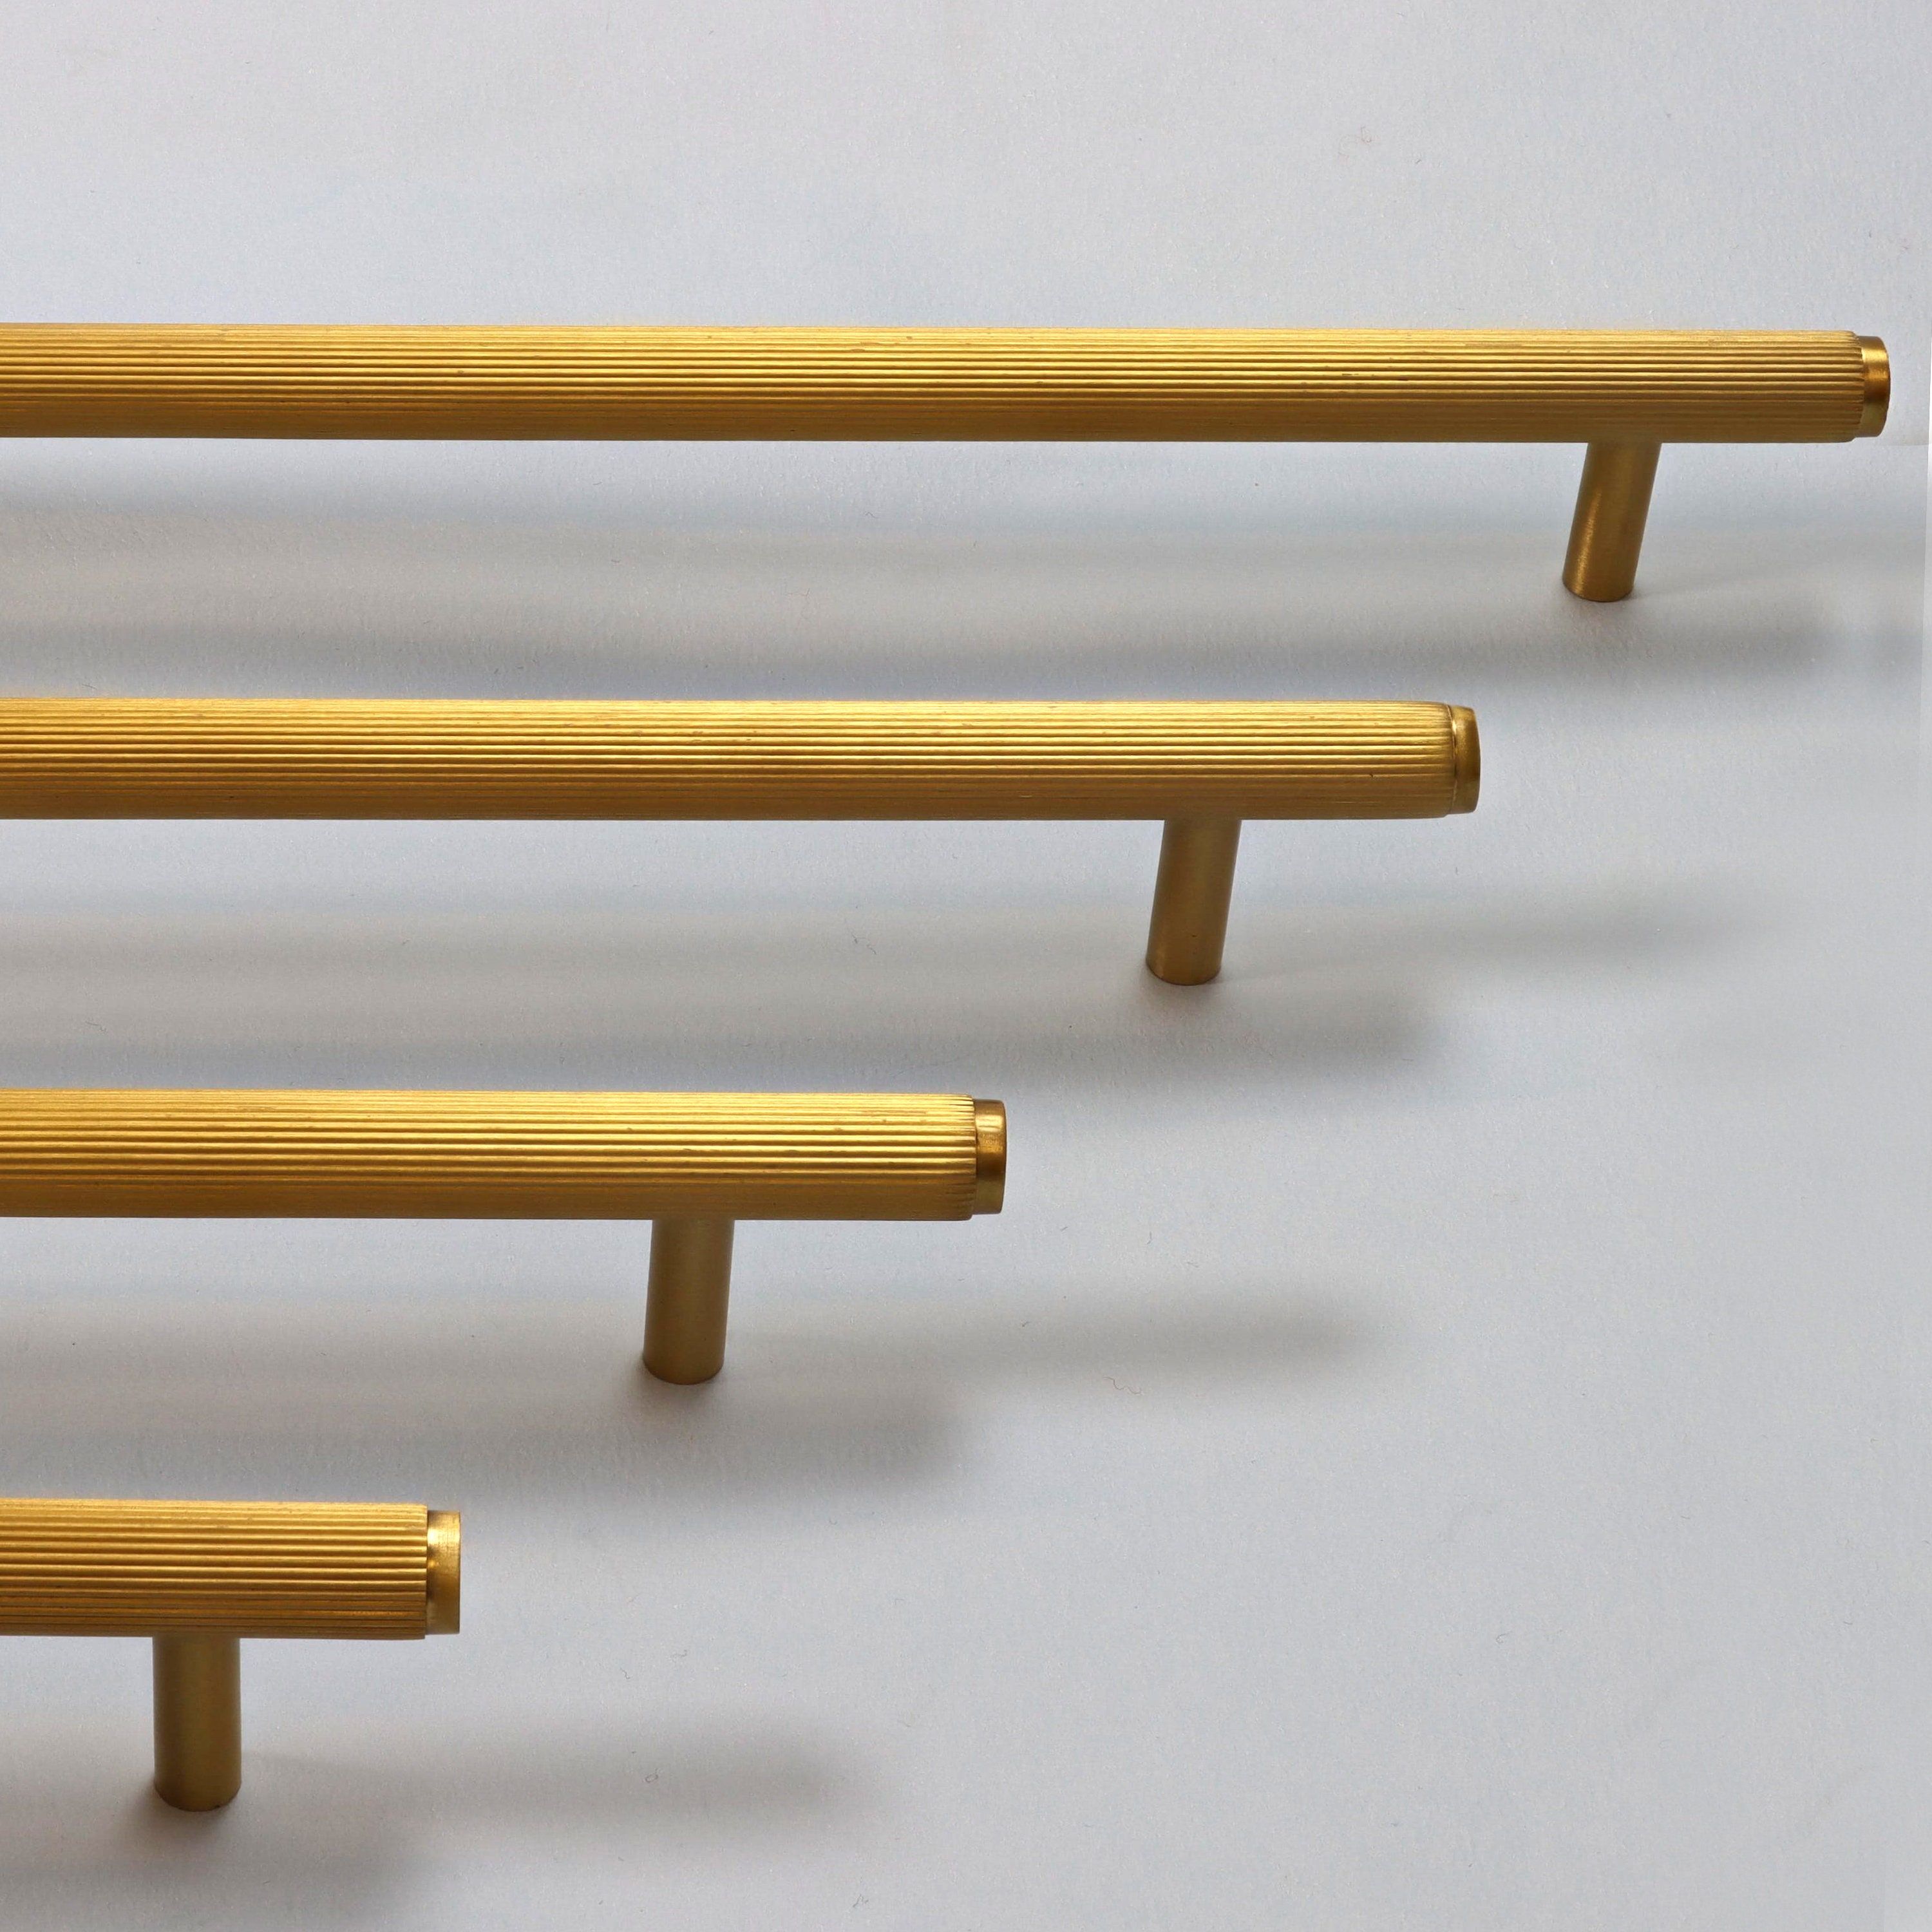 Tirador mueble INSPIRE amarillo / dorado distancia entre eje 128 mm